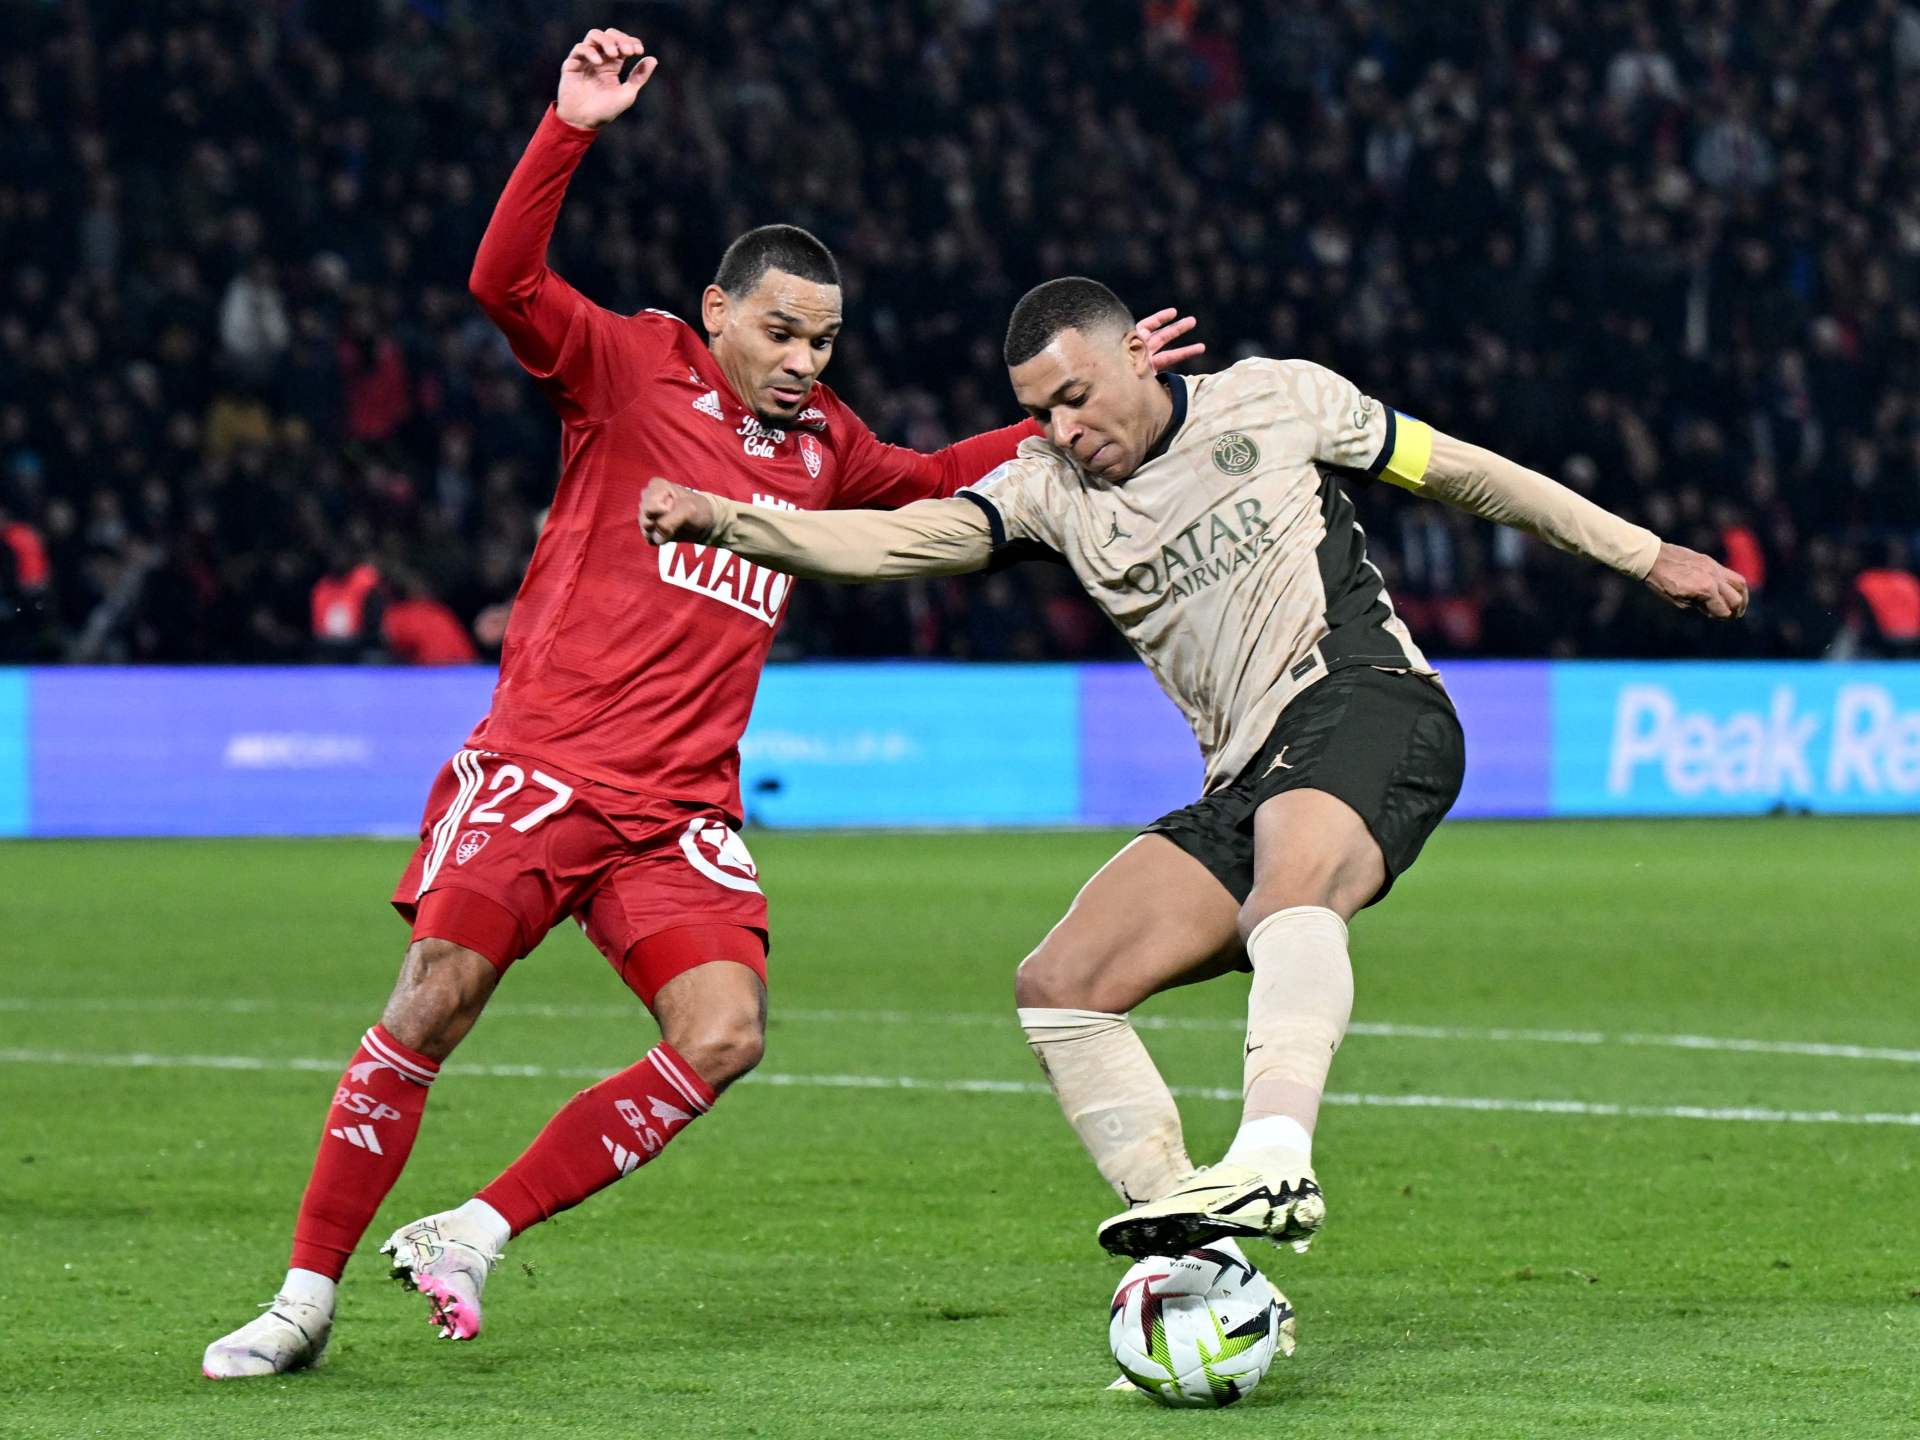 بريست يفرض التعادل على سان جيرمان في الدوري الفرنسي | رياضة – البوكس نيوز